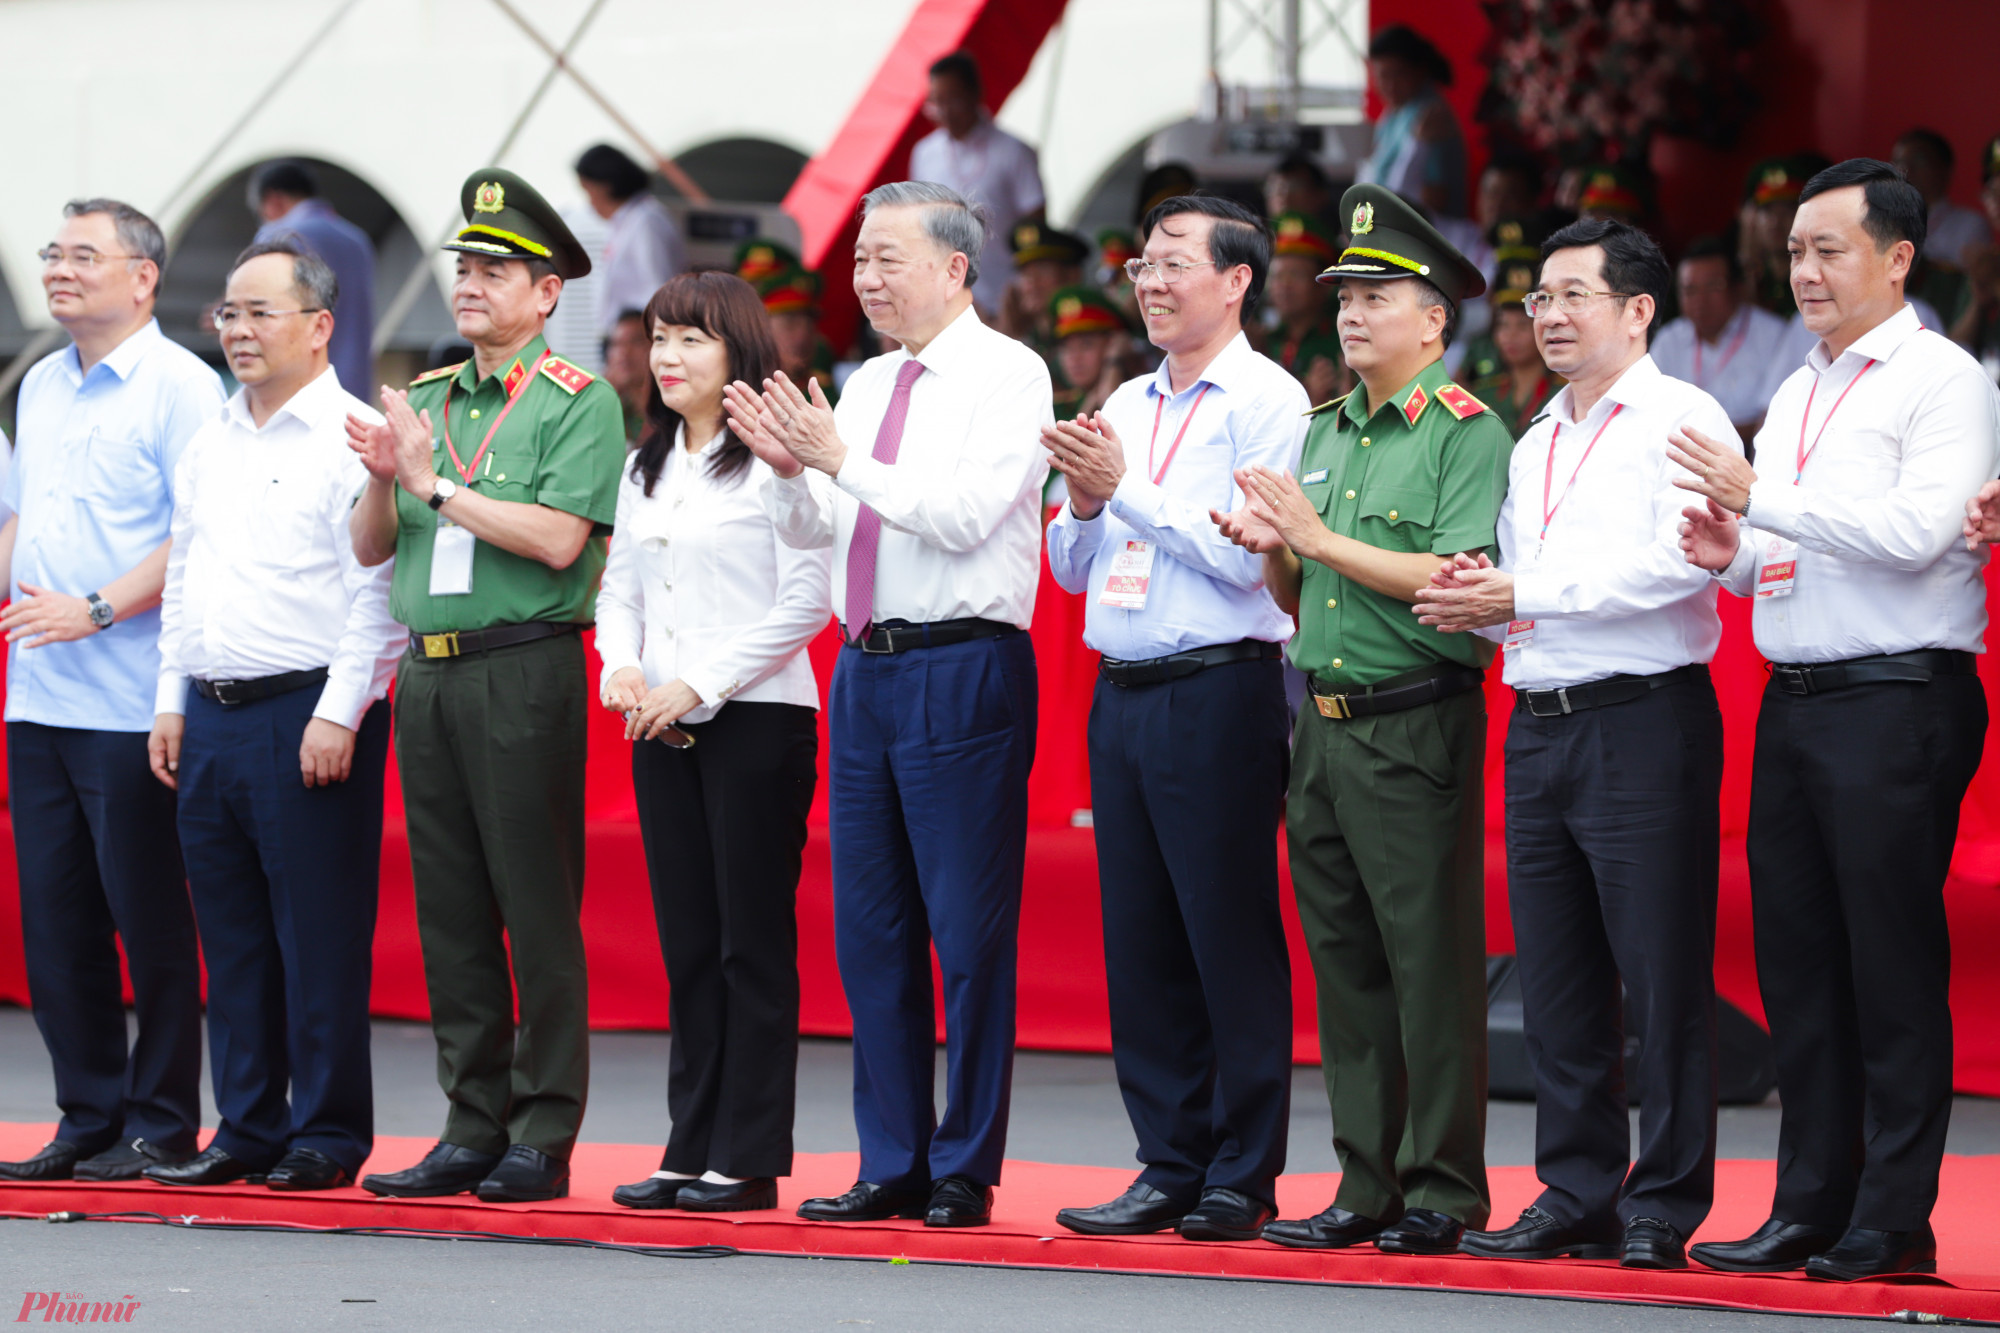 Tham dự lễ ra mắt có Chủ tịch nước Tô Lâm, Chủ tịch UBND TPHCM Phan Văn Mãi, Trung tướng Lê Hồng Nam - Giám đốc Công an TPHCM cùng nhiều lãnh đạo các bộ, ngành trung ương và địa phương.